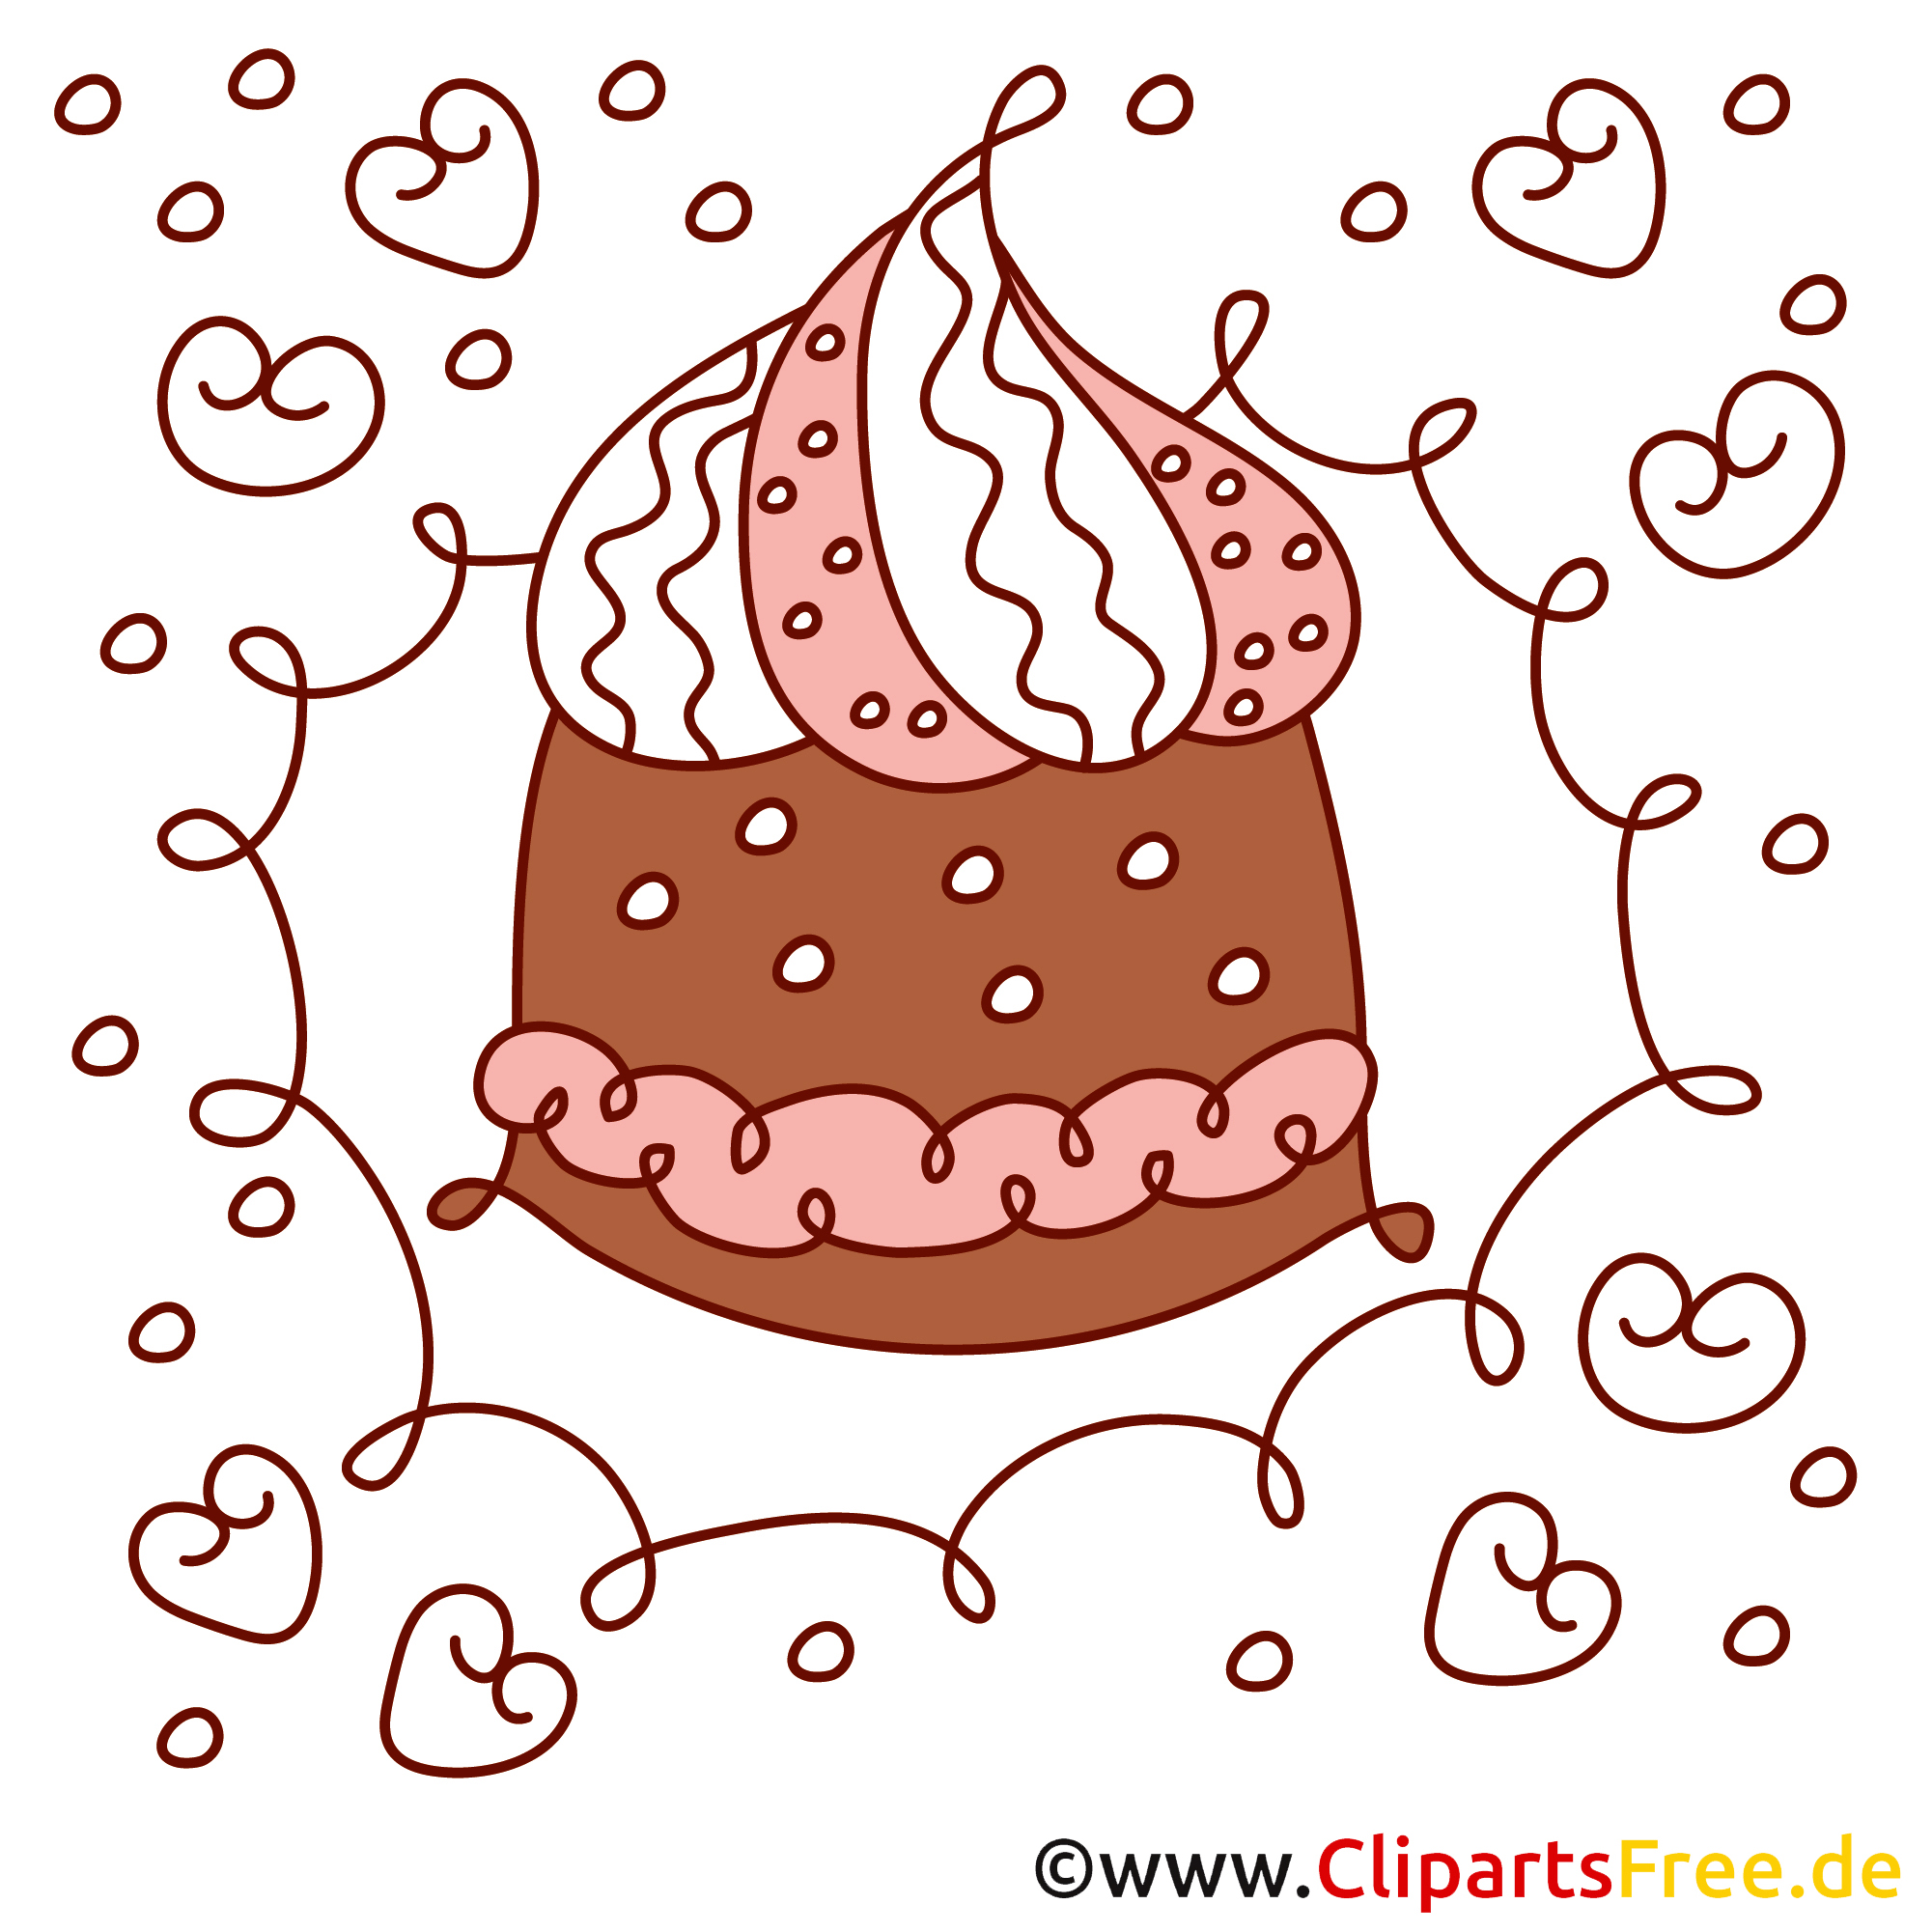 clipart torte kostenlos - photo #12